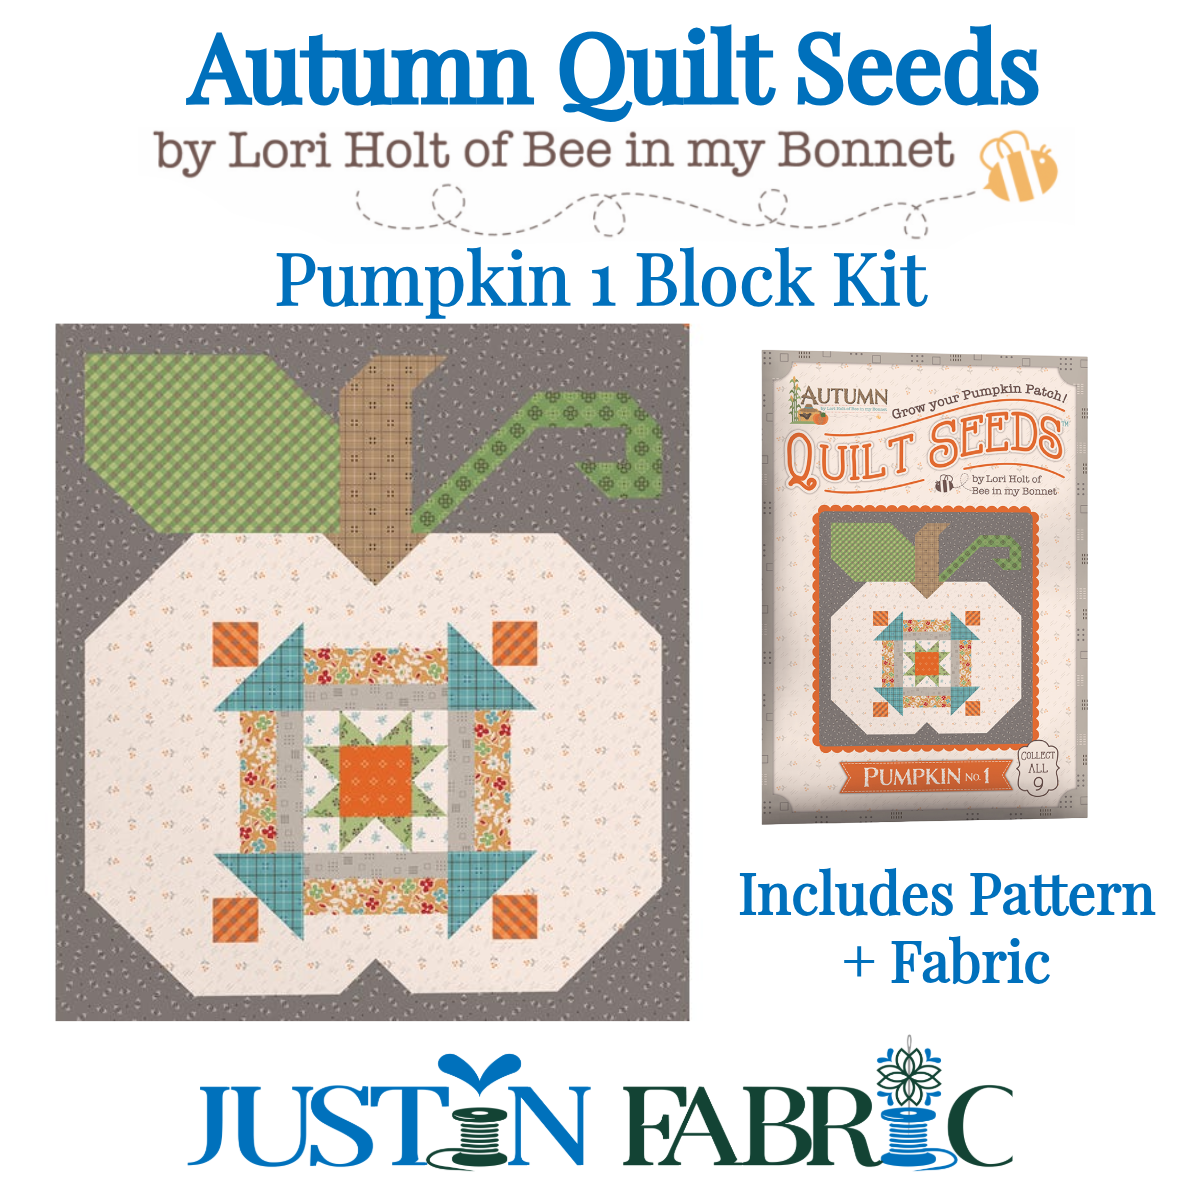 Autumn Quilt Seeds Pumpkin 1 Block Kit Featuring Autumn by Lori Holt